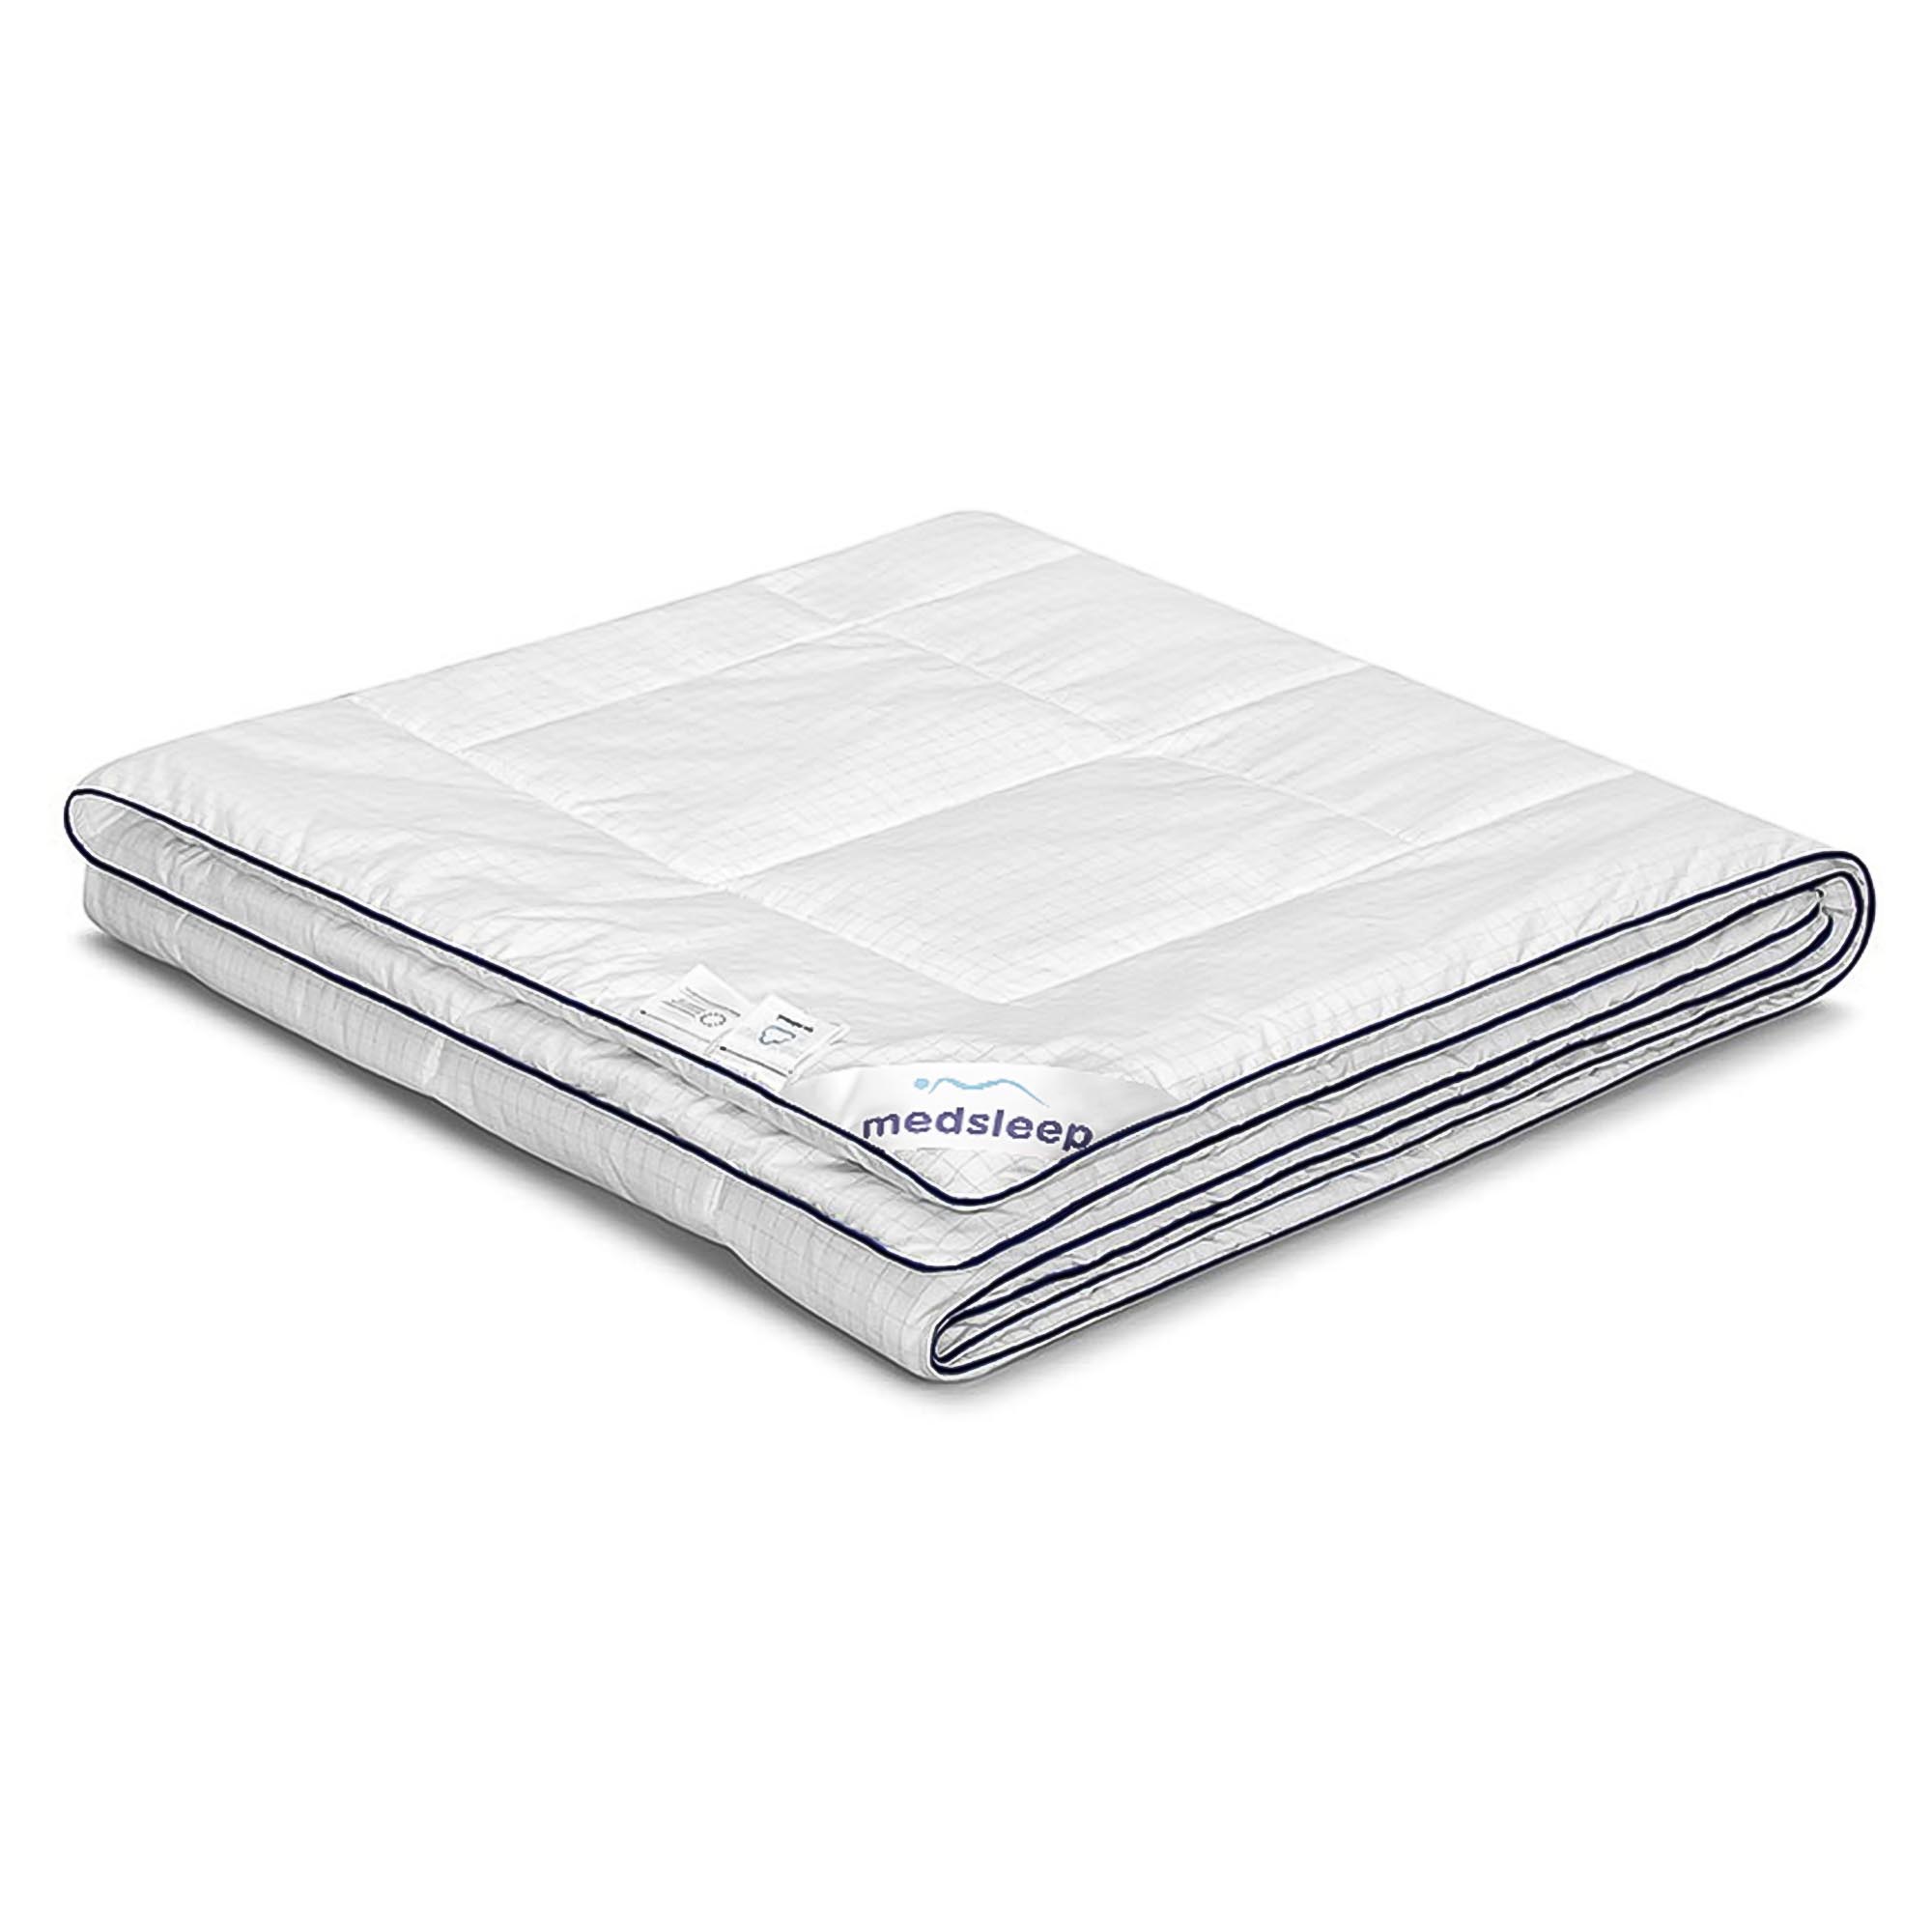 Одеяло Medsleep Nubi белое 200х210 см одеяло лебяжий пух premium р 140х205